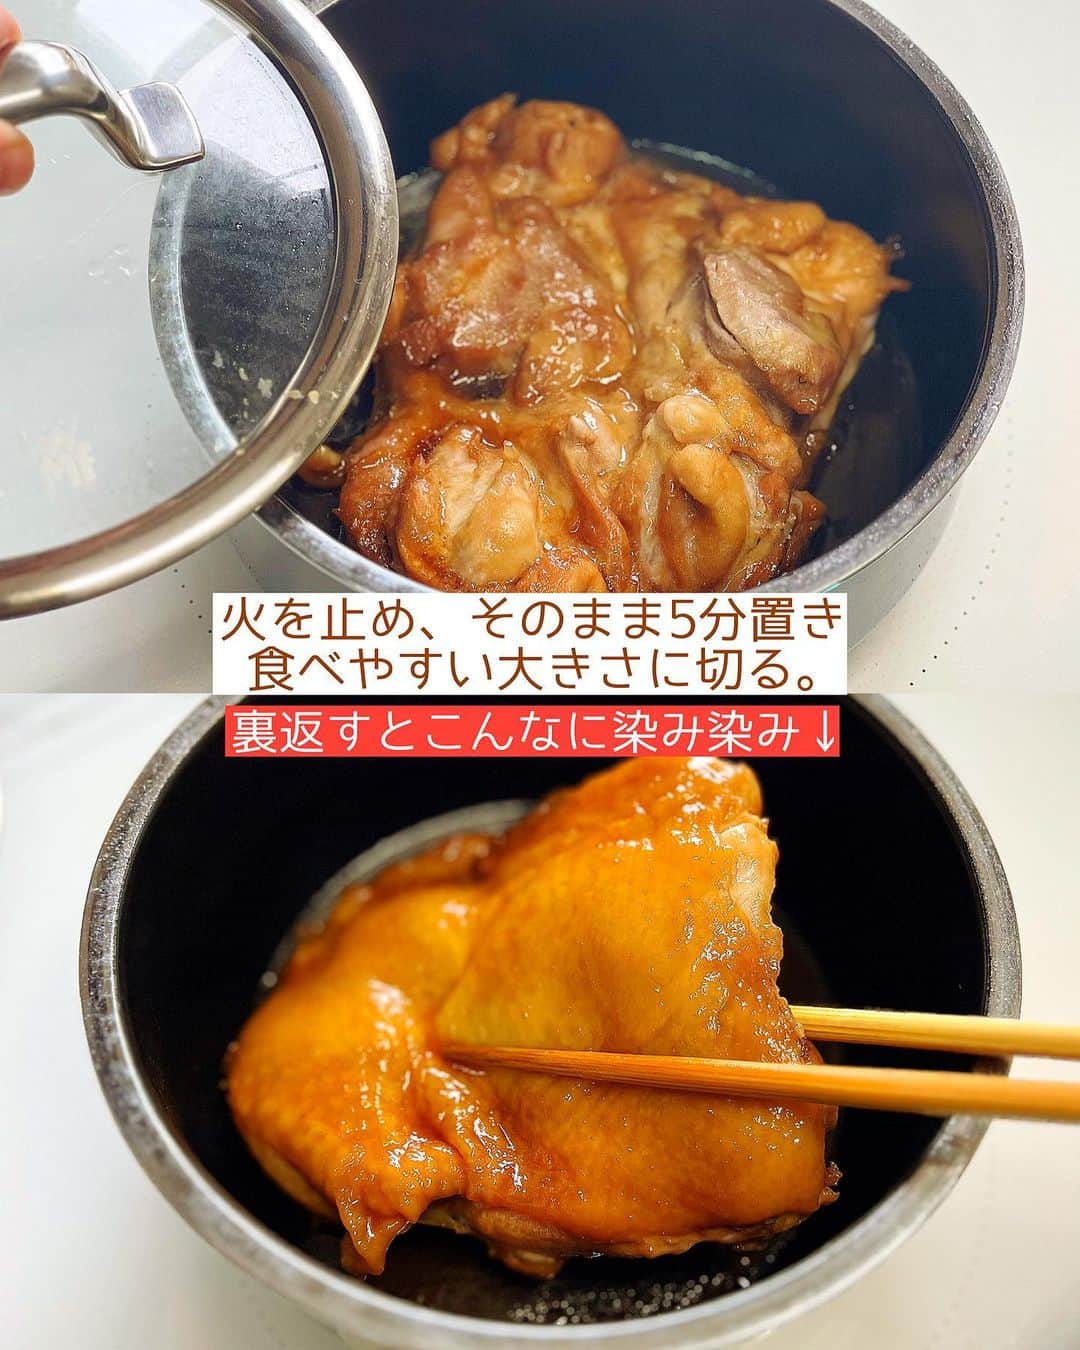 Mizuki【料理ブロガー・簡単レシピ】さんのインスタグラム写真 - (Mizuki【料理ブロガー・簡単レシピ】Instagram)「・#ウワサのお客さま レシピ📺 ⁡ ［#レシピ ］ ーーーーーーーーーーーーーーーーーー 鶏肉のほったらかしバターしょうゆ煮 ーーーーーーーーーーーーーーーーーー ⁡ ⁡ ⁡ おはようございます☺️ ⁡ 昨日は#ウワサのお客さま をご覧いただいて ありがとうございました！！ 笑うしかない場面も多々ございましたが😂 無事放送が終わってホッとしています🌸 ⁡ そして、たくさんの方にフォローしていただいて 本当にありがとうございます🙇‍♀️ 【簡単・時短・節約】をコンセプトに レシピを制作しておりますので 少しでもお役に立ちましたら幸いです🥰 ⁡ ⁡ さて、番組でご紹介したレシピを こちらにも一部掲載していきますね♩ まず最初は \ 鶏肉のほったらかしバターしょうゆ煮 / ⁡ お鍋に全部入れて ''いじらず触らず煮るだけ''の 超簡単レシピです😋💕 ⁡ ⁡ ⁡ ⋱⋰ ⋱⋰ ⋱⋰ ⋱⋰ ⋱⋰ ⋱⋰ ⋱⋰ 📍簡単・時短・節約レシピ更新中  Threadsもこちらから▼ @mizuki_31cafe ⁡ 📍謎の暮らし＆変なライブ垢 @mizuki_kurashi ⋱⋰ ⋱⋰ ⋱⋰ ⋱⋰ ⋱⋰ ⋱⋰ ⋱⋰ ⁡ ⁡ ⁡ ＿＿＿＿＿＿＿＿＿＿＿＿＿＿＿＿＿＿＿ 【2人分】 鶏もも肉…大1枚(300g) ●酒…80ml ●しょうゆ…大2 ●砂糖…大1 ●バター…5g   1.小鍋に●を入れ、鶏肉の皮目を下にして加え、中火にかける。煮立ったら蓋を少しずらしてのせ、弱めの中火で12分煮る。 2.火を止め、そのまま5分置き、食べやすい大きさに切る。 ￣￣￣￣￣￣￣￣￣￣￣￣￣￣￣￣￣￣￣ ⁡ ⁡ 《ポイント》 ♦︎鶏肉がぴったりおさまるサイズ(16cmが最適)の鍋に入れるだけ！いじらず触らず煮るだけで、しっかり味が染みます♩ ♦︎火を止めて5分置くことで肉汁が閉じ込められます♩ ⁡ ⁡ ⁡ ⁡ ⁡ ⁡ ⋱⋰ ⋱⋰ ⋱⋰ ⋱⋰ ⋱⋰ ⋱⋰ ⋱⋰  愛用している調理器具・器など   #楽天ROOMに載せてます ‎𐩢𐩺  (ハイライトから飛べます🕊️) ⋱⋰ ⋱⋰ ⋱⋰ ⋱⋰ ⋱⋰ ⋱⋰ ⋱⋰ ⁡ ⁡ ⁡ ⁡ ⁡ ⁡ ✼••┈┈┈┈┈••✼••┈┈┈┈┈••✼ 今日のごはんこれに決まり！ ‎𓊆#Mizukiのレシピノート 500品𓊇 ✼••┈┈┈┈┈••✼••┈┈┈┈┈••✼ ⁡ ˗ˏˋ おかげさまで25万部突破 ˎˊ˗ 料理レシピ本大賞準大賞を受賞しました✨ ⁡ 6000点の中からレシピを厳選し まさかの【500レシピ掲載】 肉や魚のメインおかずはもちろん 副菜、丼、麺、スープ、お菓子 ハレの日のレシピ、鍋のレシピまで 全てこの一冊で完結 𓌉◯𓇋 (全国の書店・ネット書店で発売中) ⁡ ⁡ ⁡ ⁡ ⁡ ⁡ #鶏肉レシピ #ほったらかし #ほったらかしレシピ #速攻料理 #ほったらかし料理 #鶏肉のほったらかし煮 #節約料理  #簡単料理  #時短料理 #mizukiレシピ  #時短レシピ #節約レシピ #簡単レシピ」9月23日 6時55分 - mizuki_31cafe